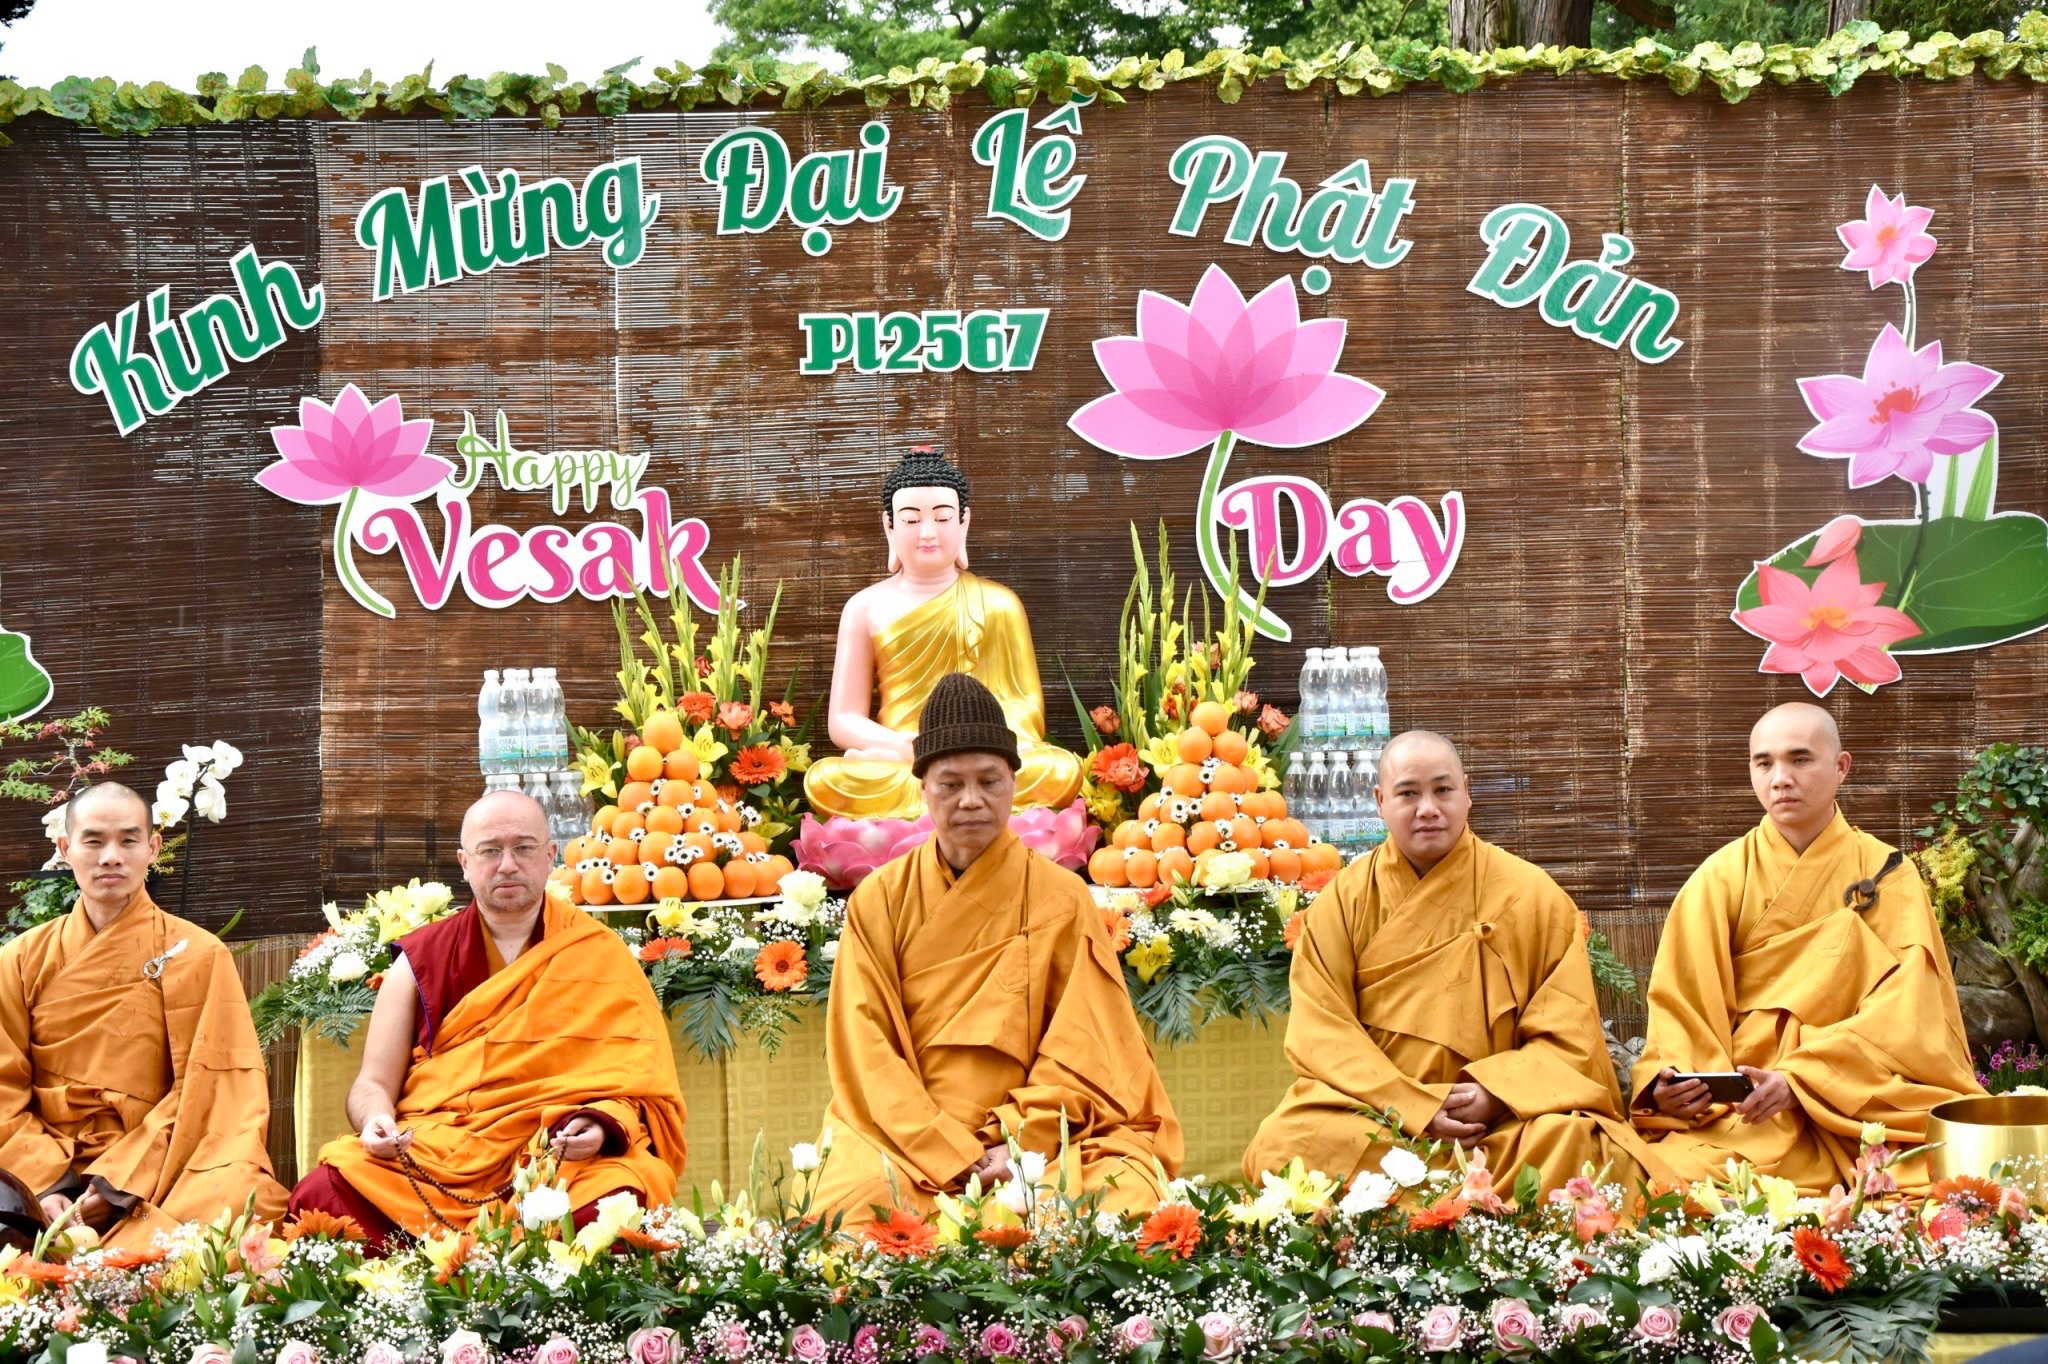 Chùa Giác Minh - Cộng hòa Séc tổ chức Đại lễ Phật đản PL. 2567. 